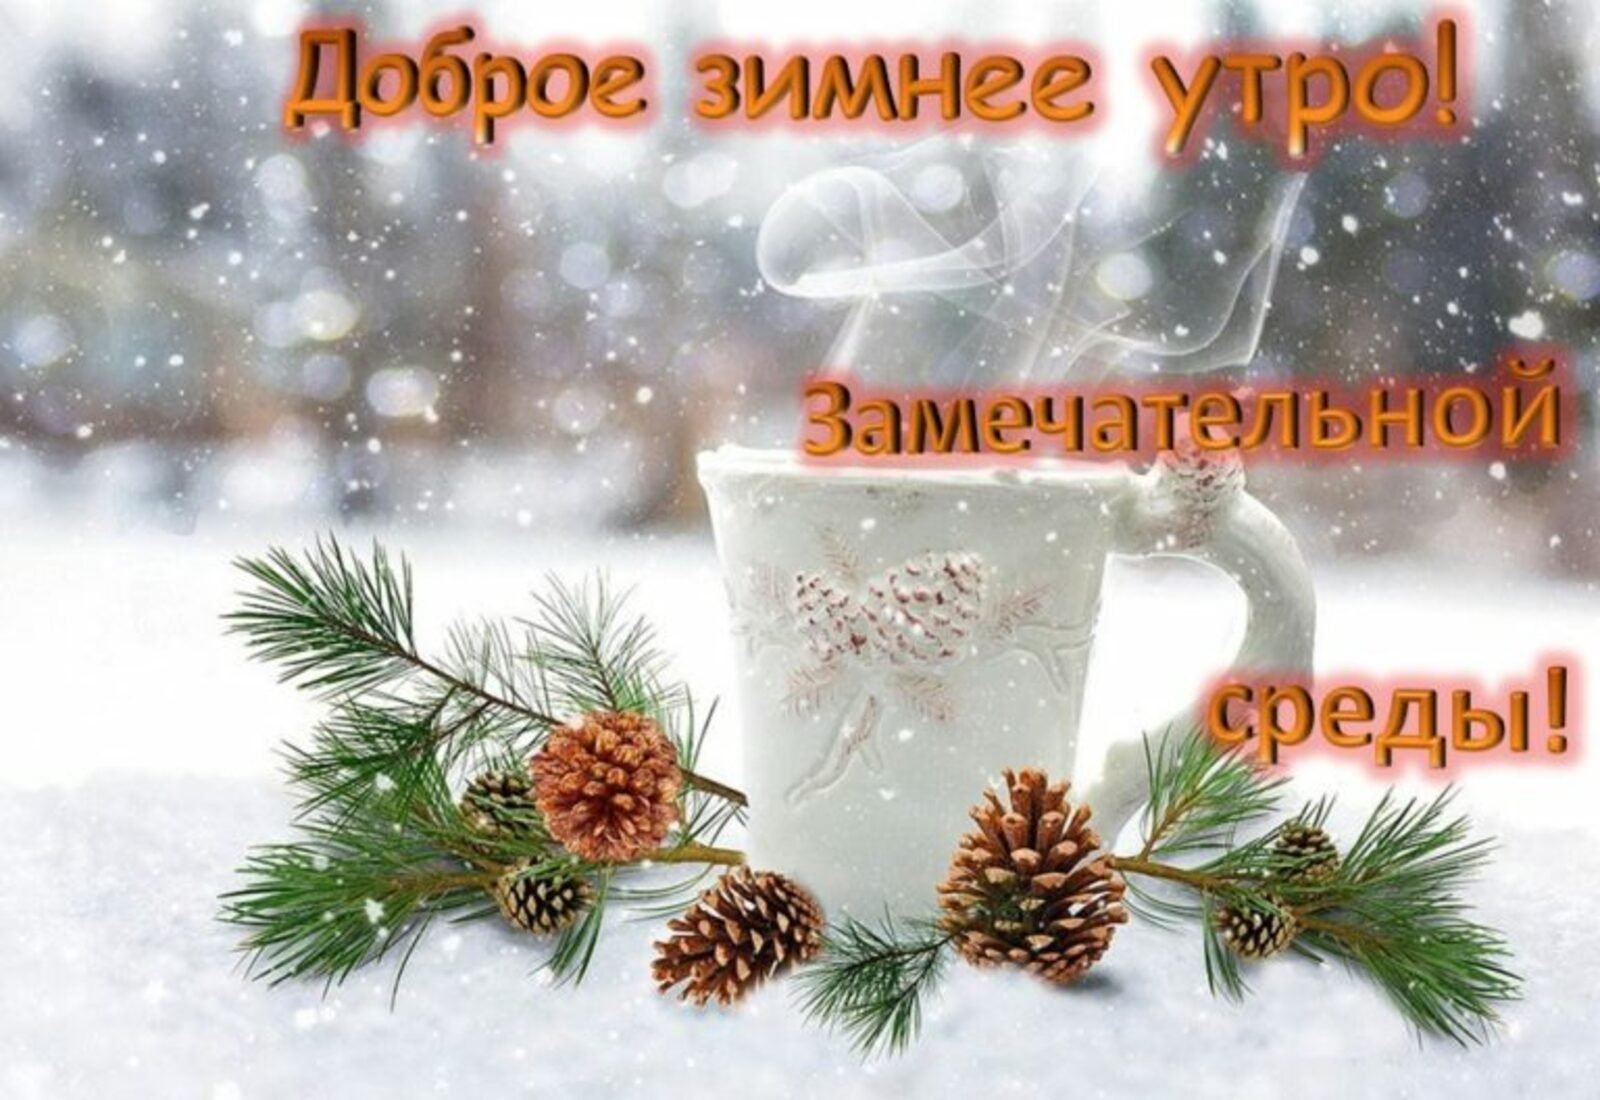 Доброе утро и хорошего настроения зимой. Доброе зимнее утро. Доброе зимнее утро среды. С добрым зимним утром СПЕДВ. С добрым зимним утром среды.